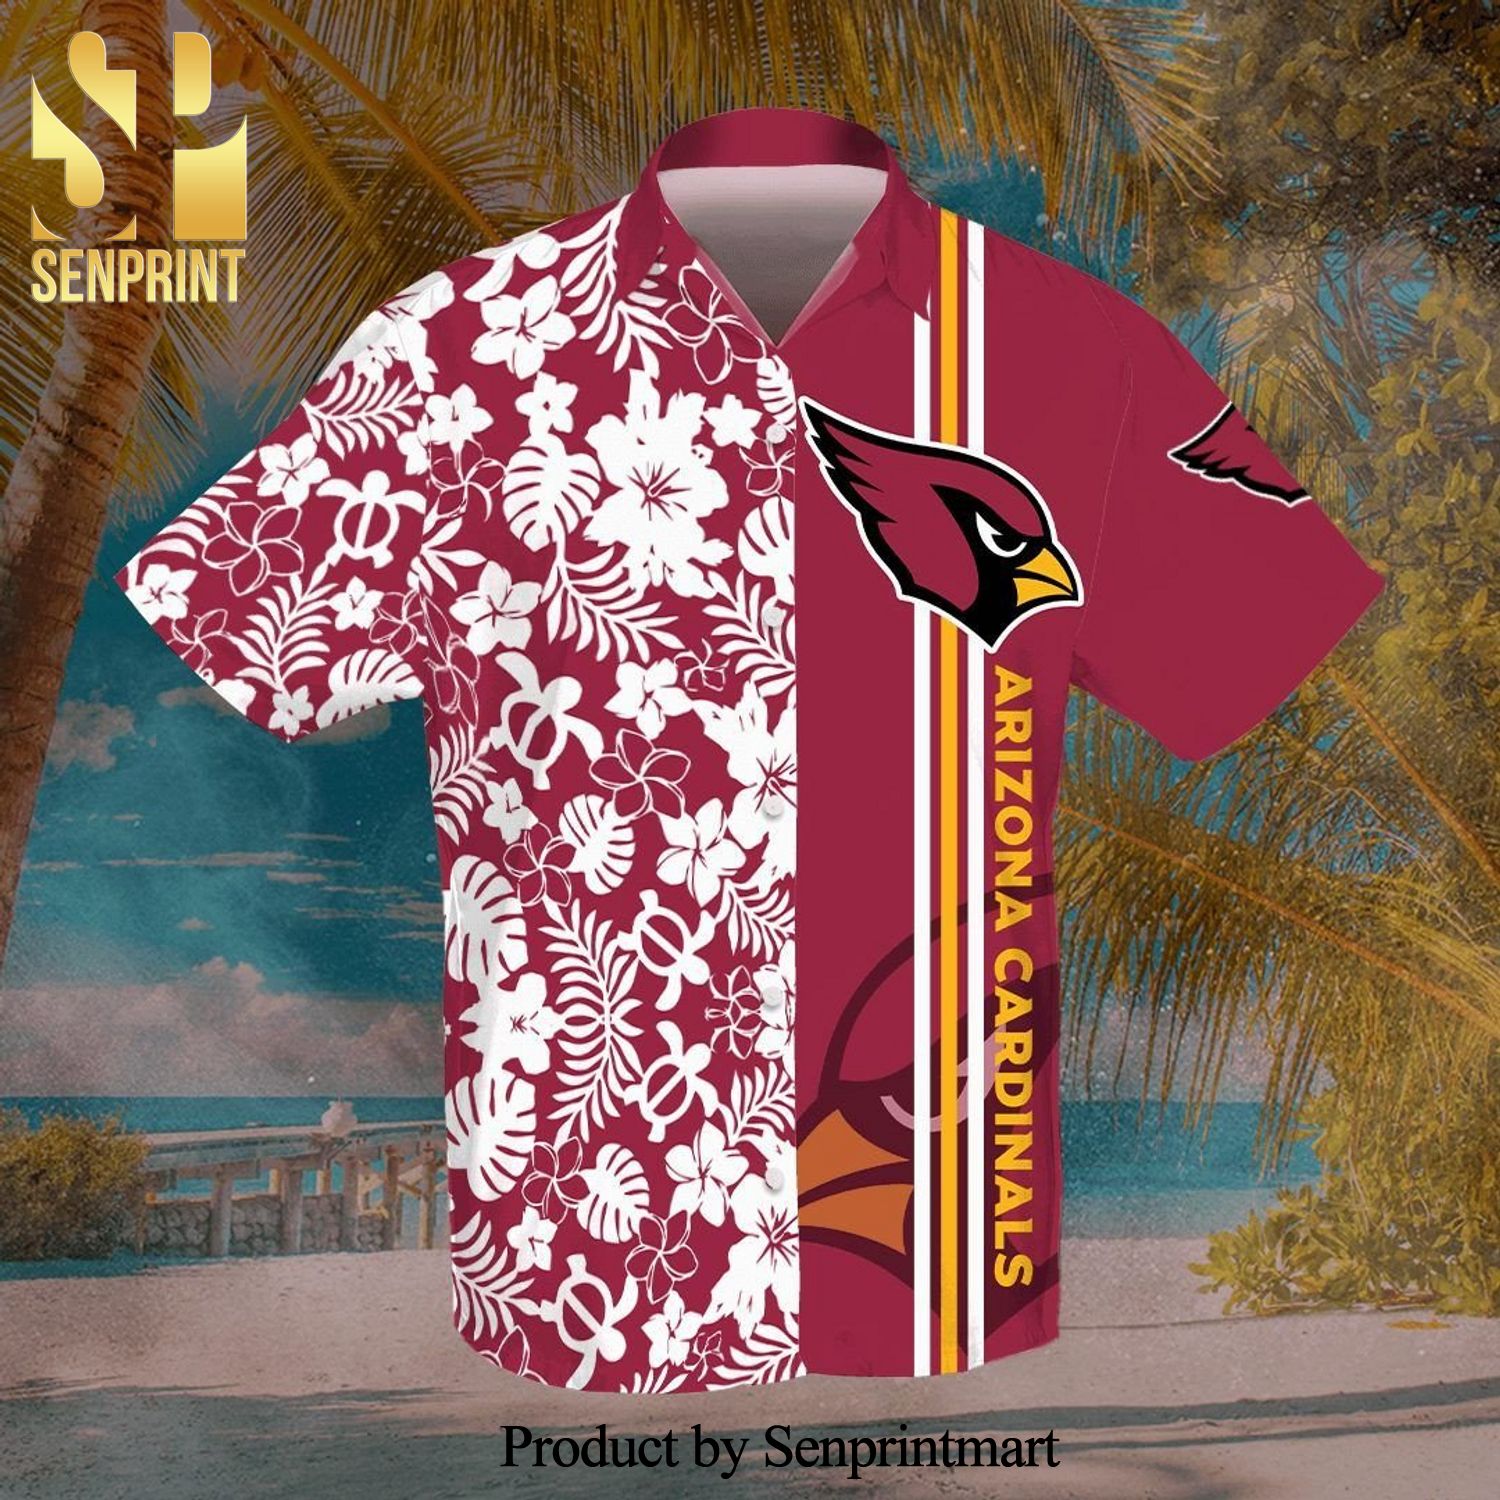 Arizona Cardinals Hawaiian Shirt NFL Football Print Custom Name Cheap Button  Up Hawaiian Shirt - T-shirts Low Price